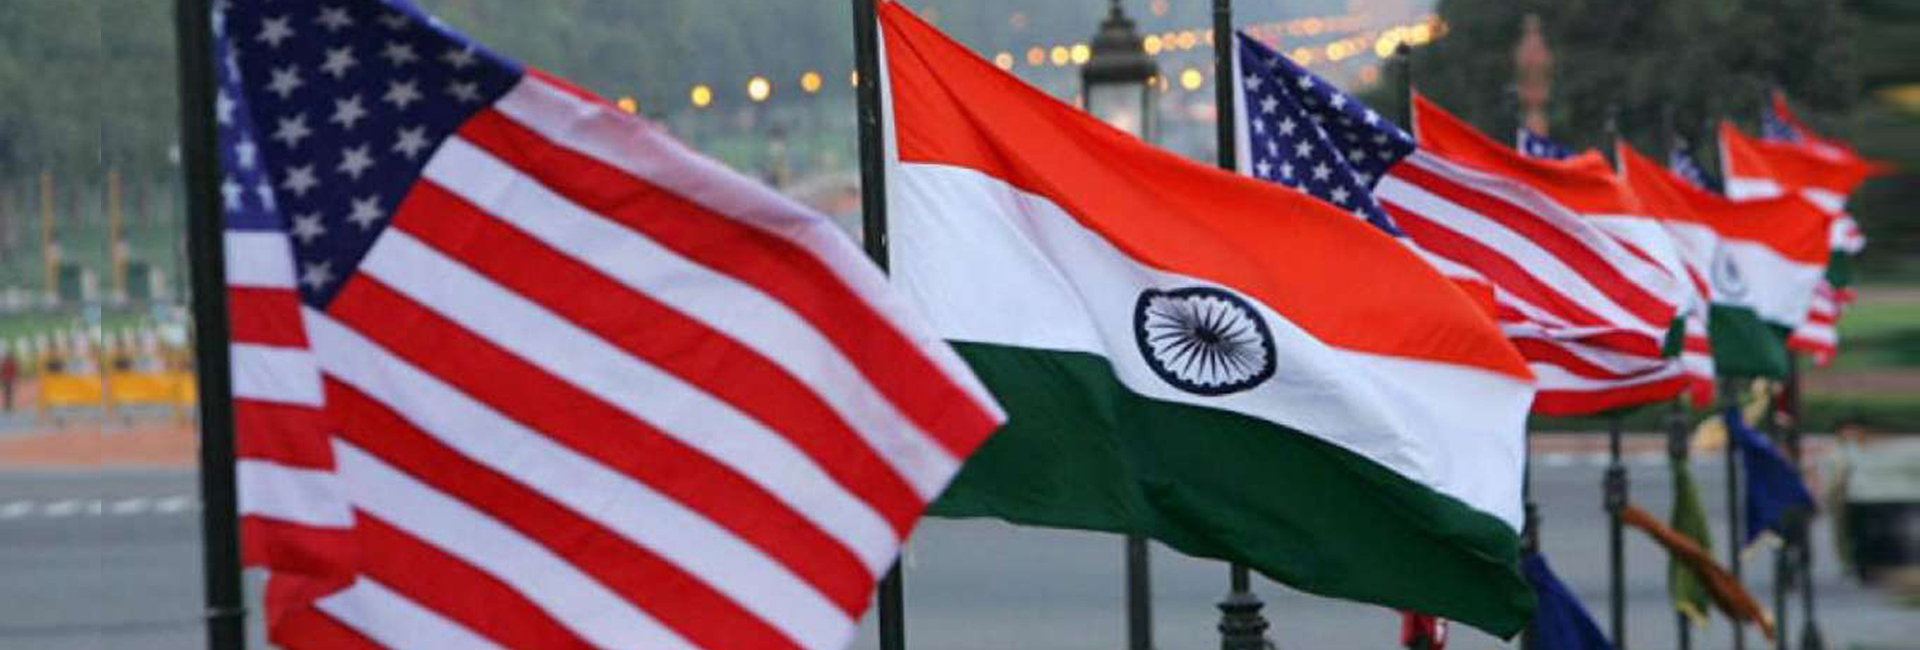 Conheça os políticos indianos americanos na corrida para as eleições de meio de mandato dos EUA em 2022